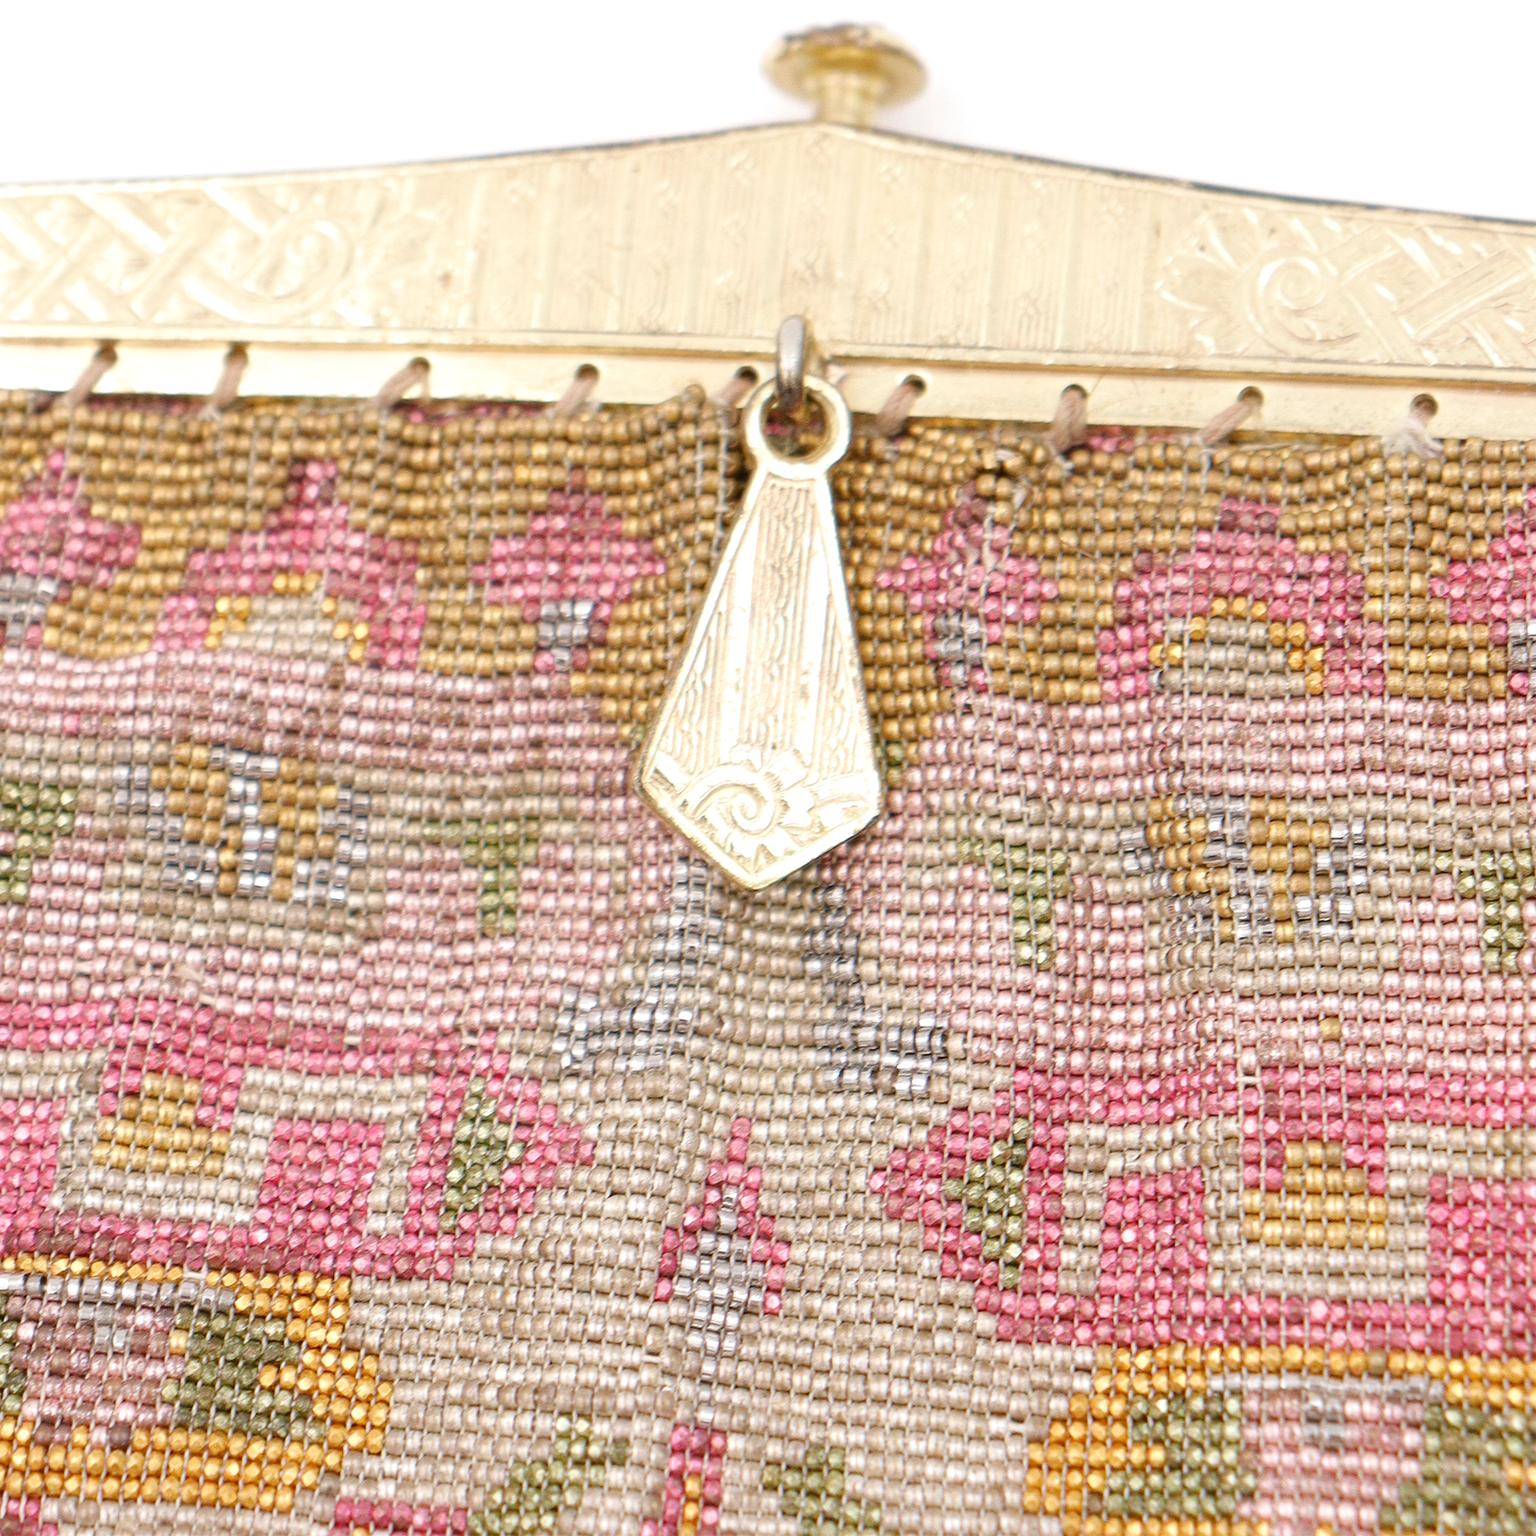 Diese antike Handtasche aus den 1910er Jahren ist ein wunderschönes Beispiel für eine hochwertige Tasche aus dieser Zeit, die mit Perlen verziert ist! Diese exquisite edwardianische Abendtasche ist vollständig mit französischen Stahlperlen in Gold-,